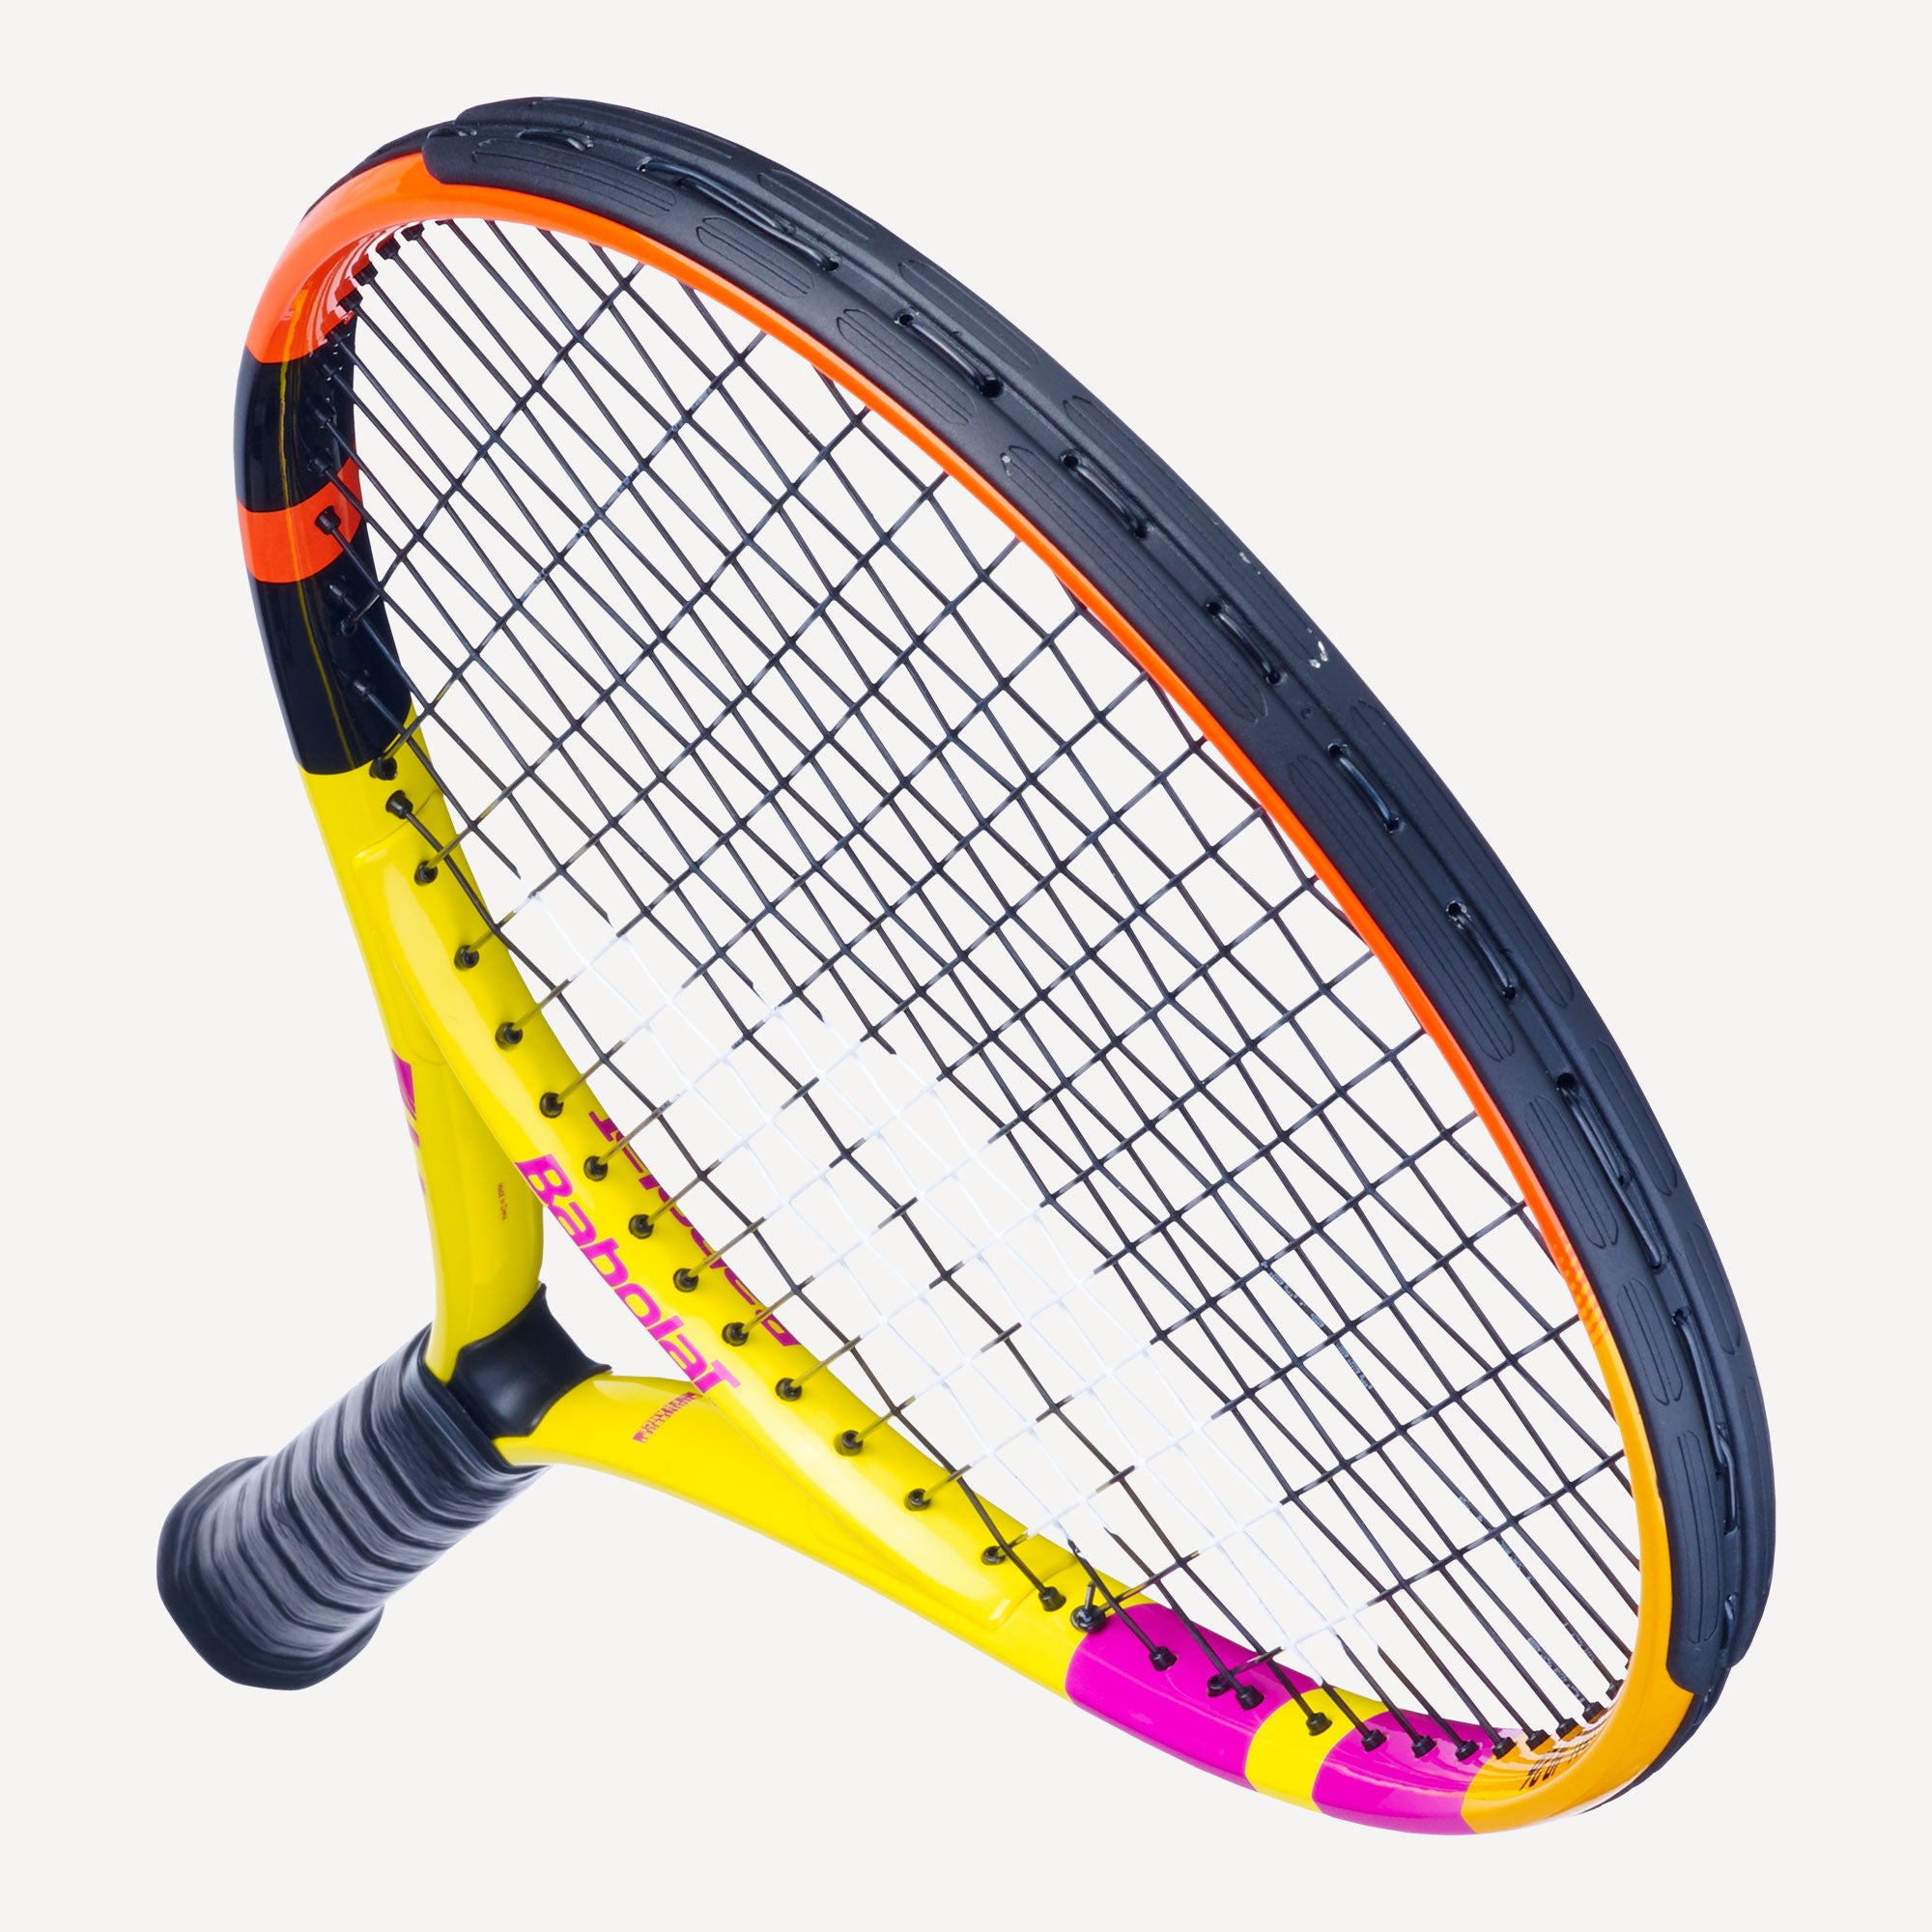 Babolat Rafa Nadal 26 Junior Tennis Racket 5